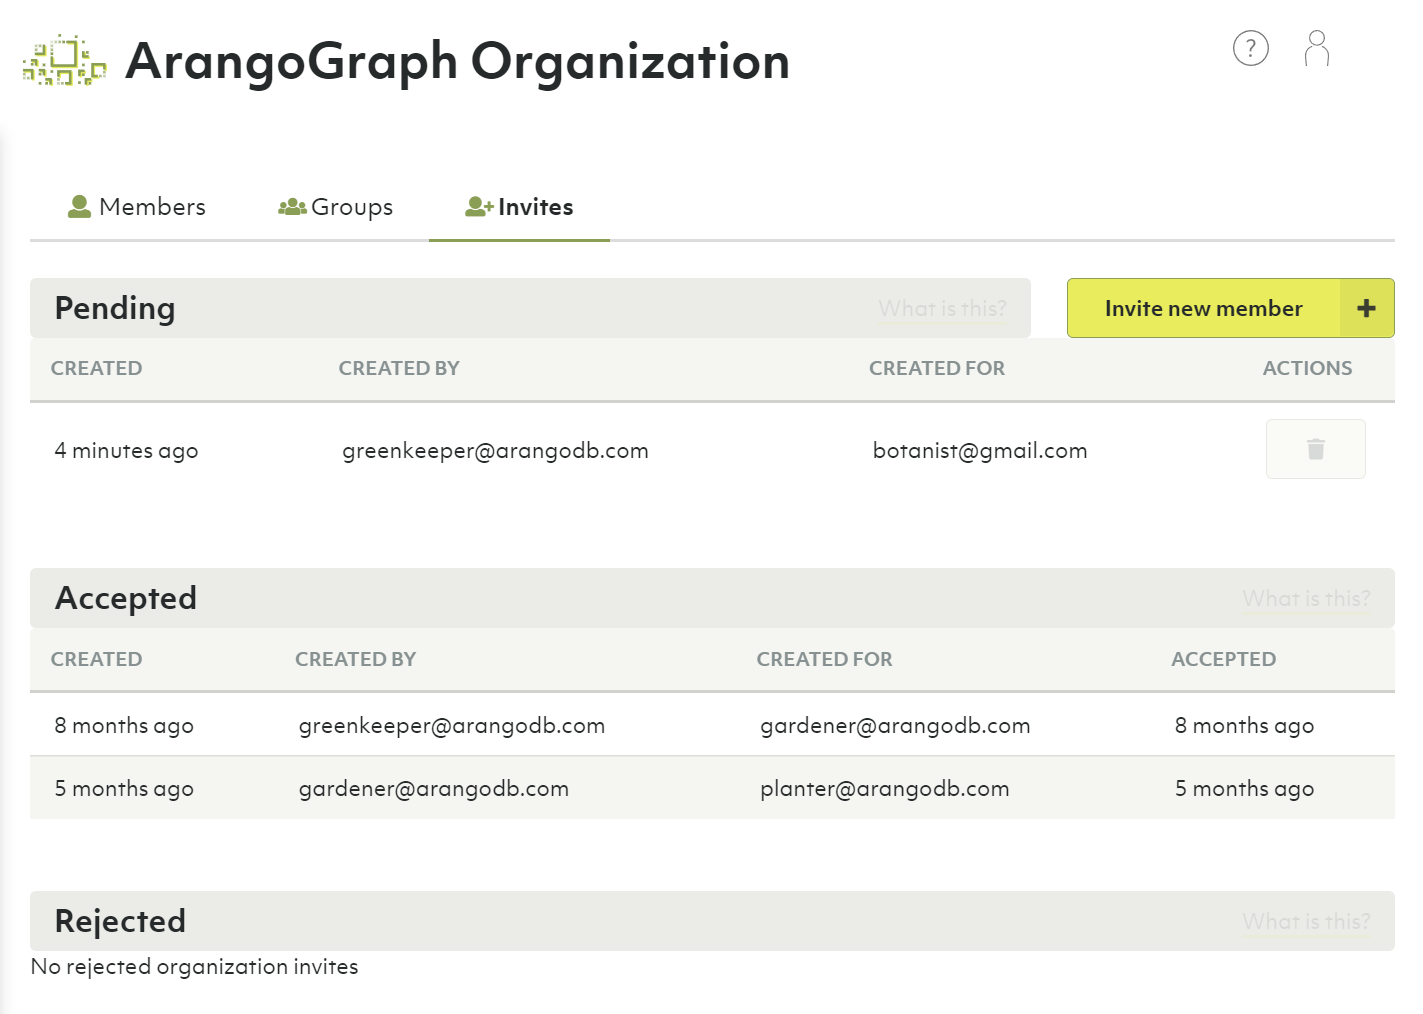 ArangoGraph Organization Invites